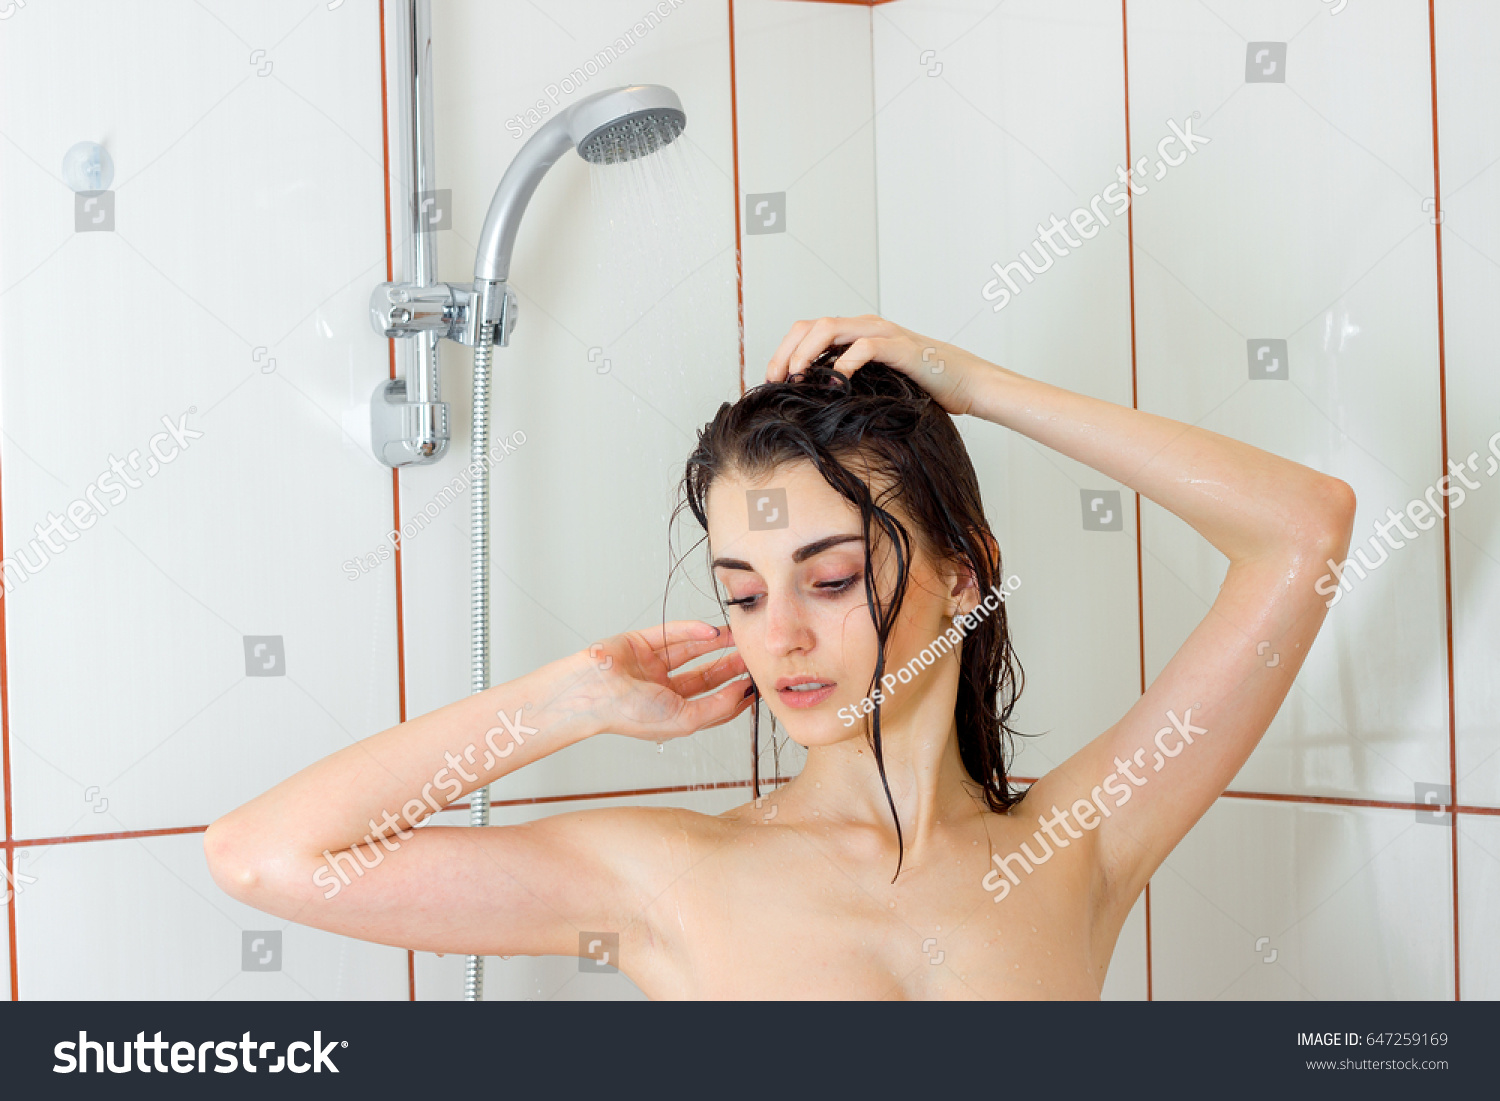 Стройная подруга принимает душ фото